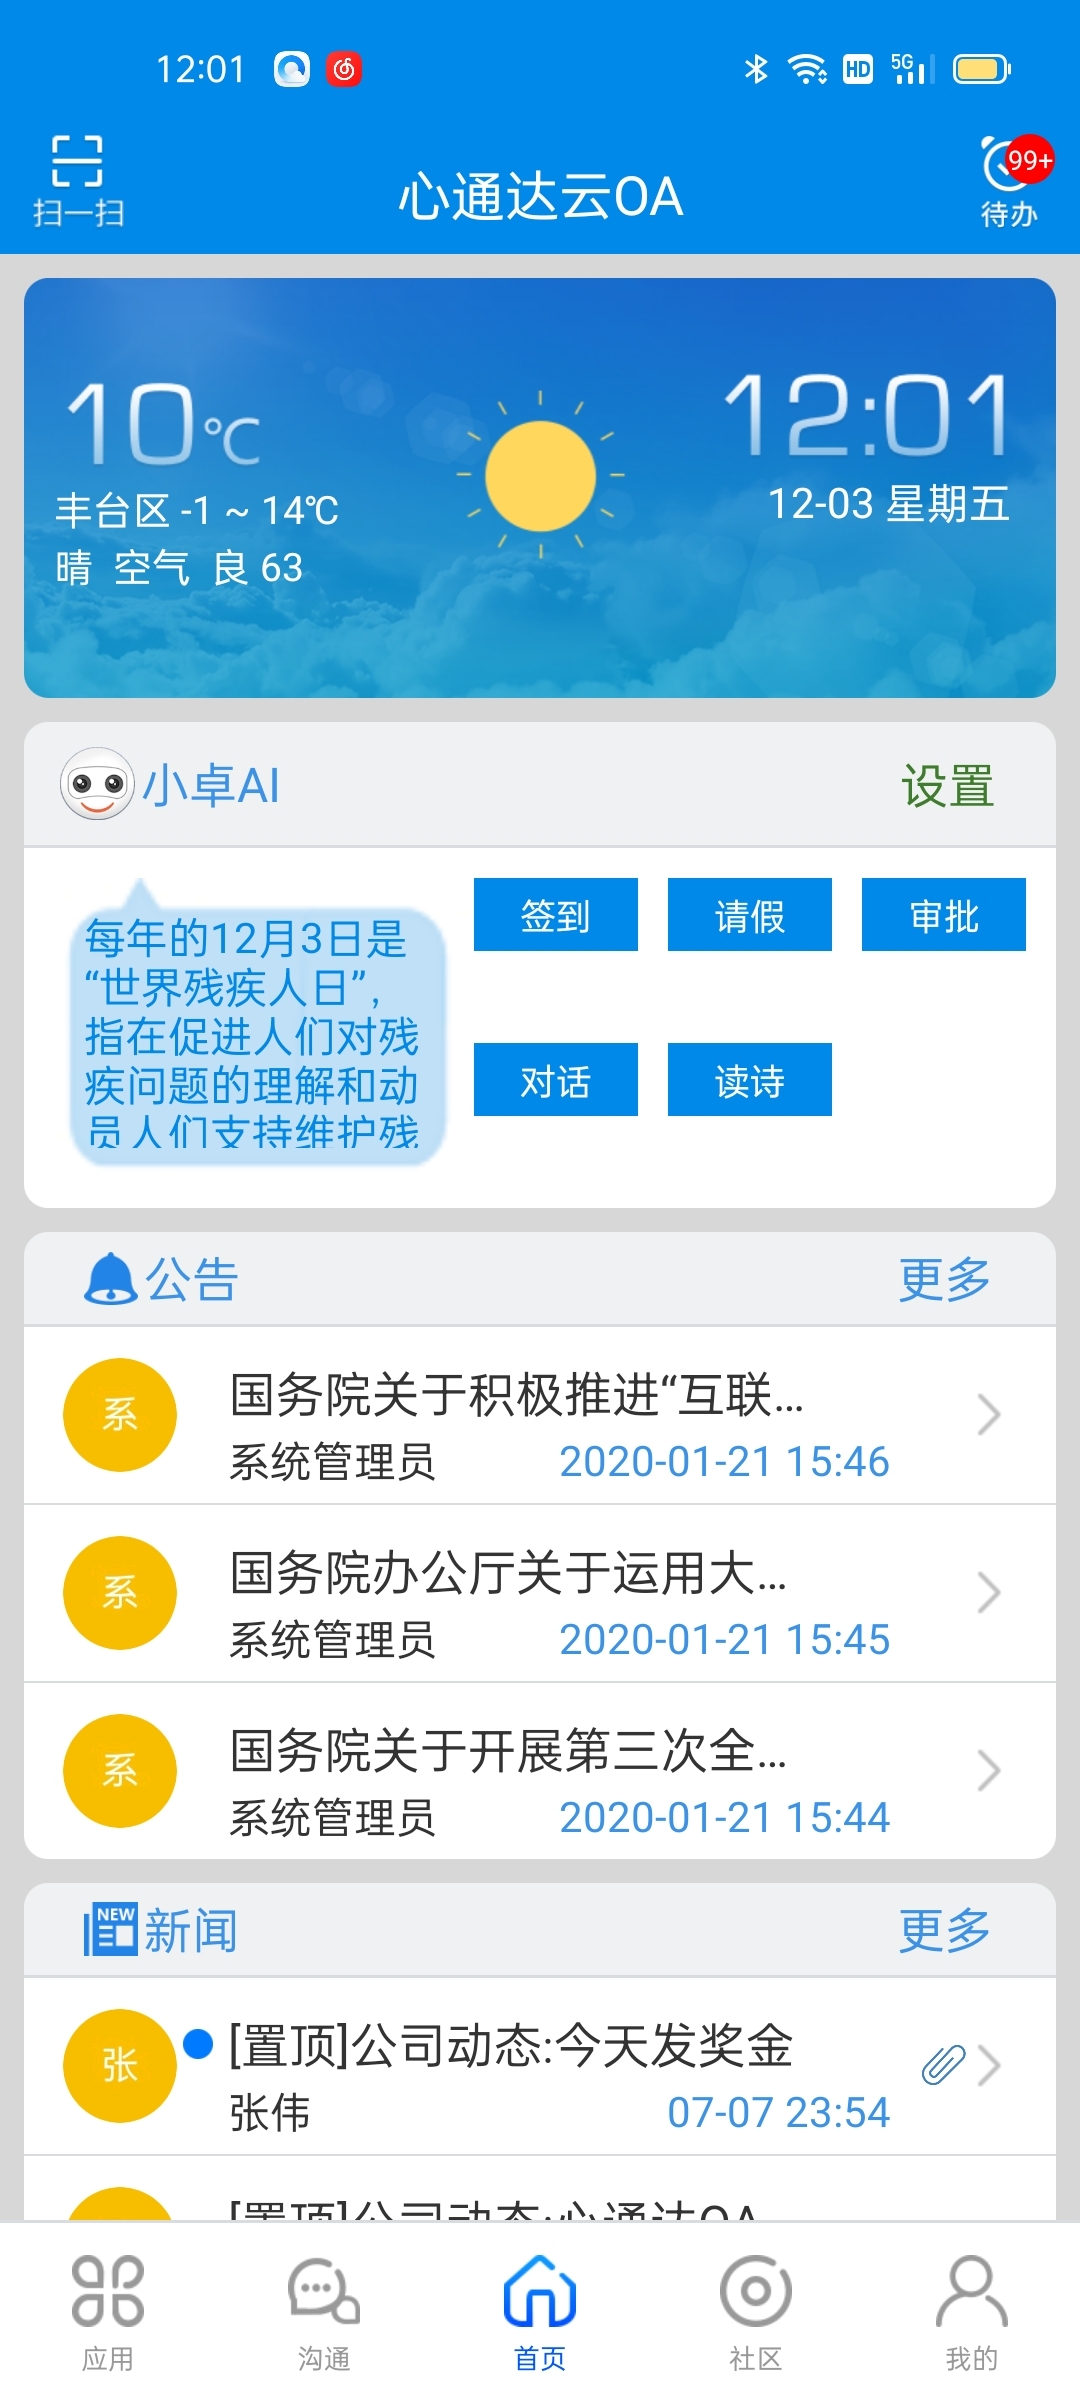 心通达OA智慧办公系统 2022春分版(iOS版)